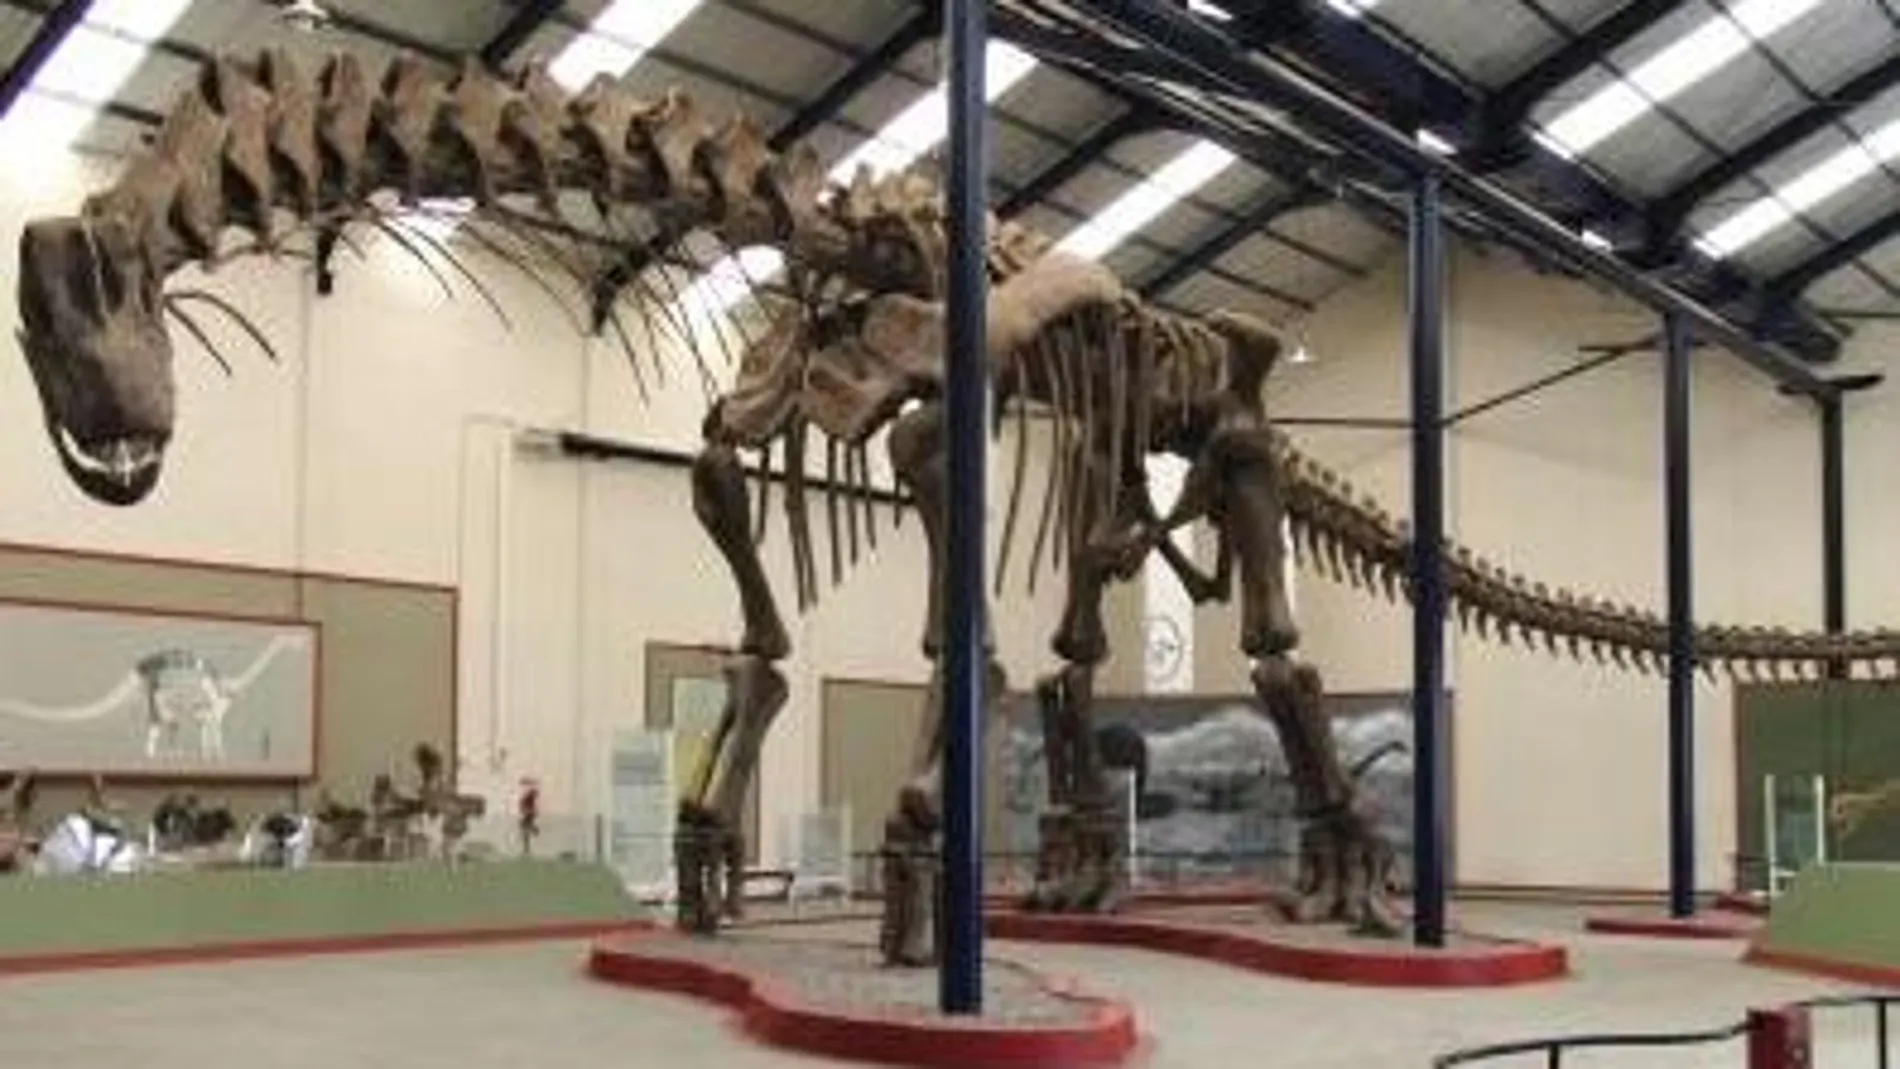 Reconstrucción del dinosaurio en el Museo Municipal Carmen Funes, en Neuquén, Argentina